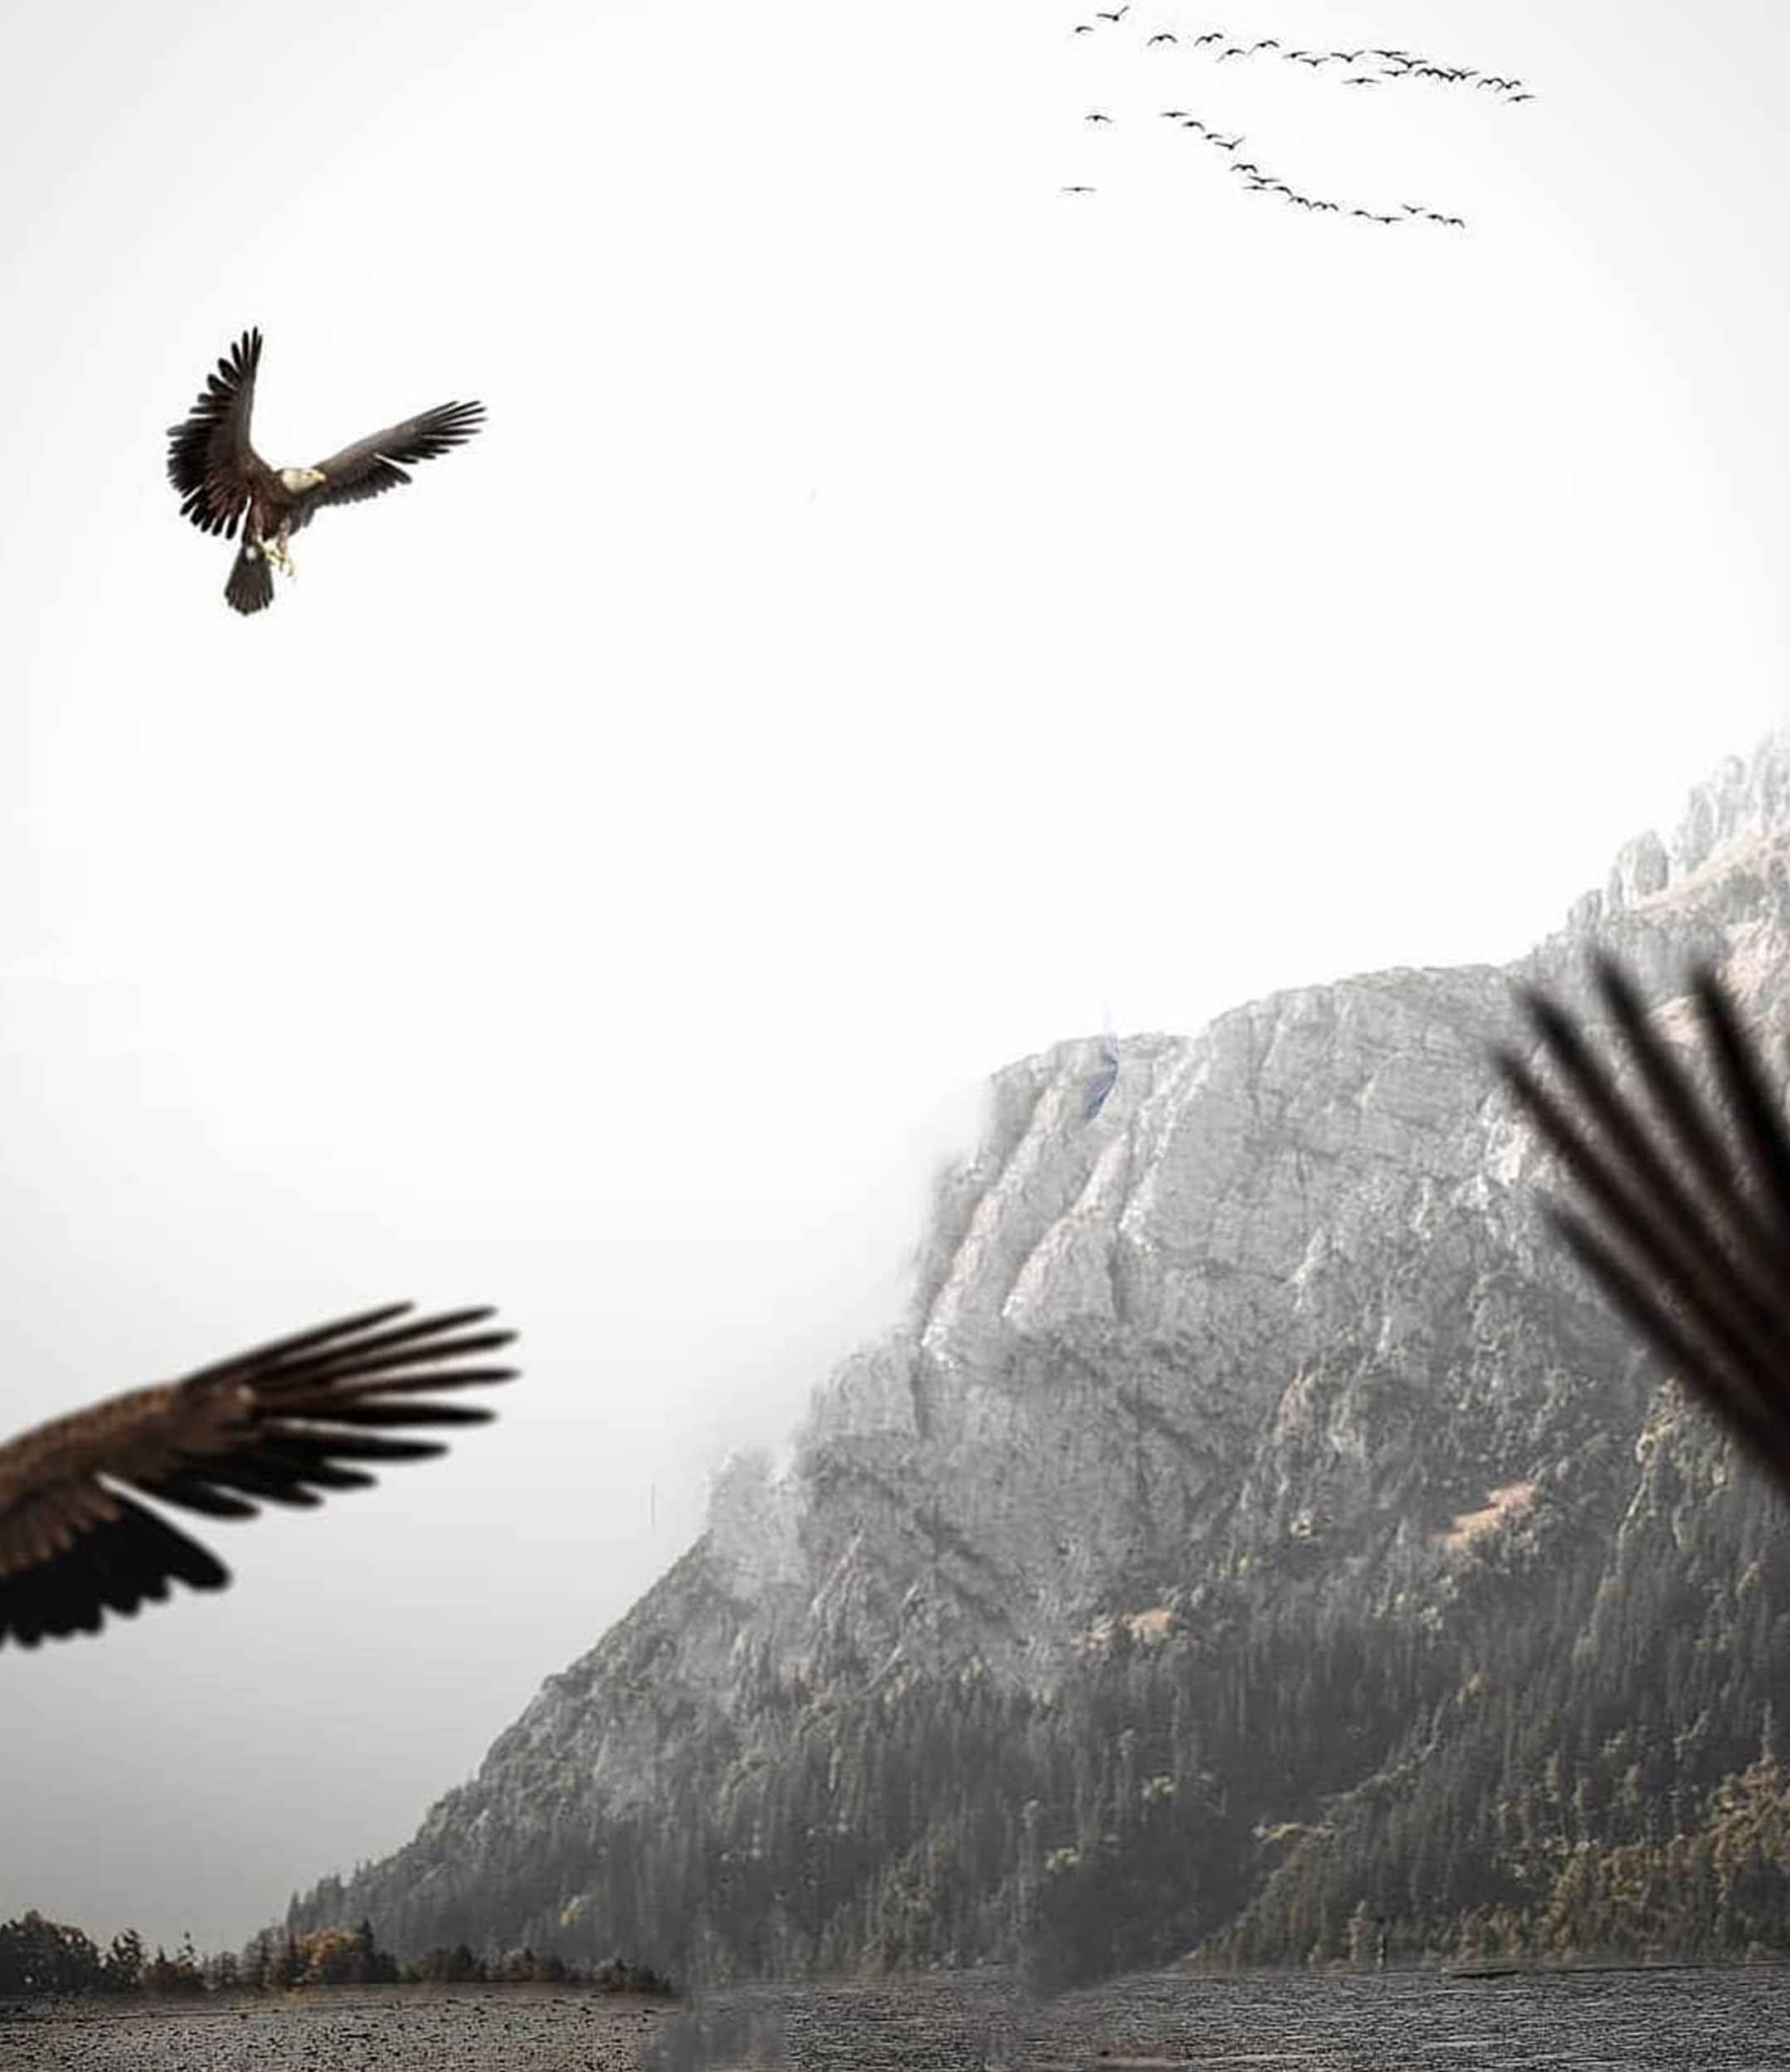 Eagle Wing Photo Editing Background Free Stock Image